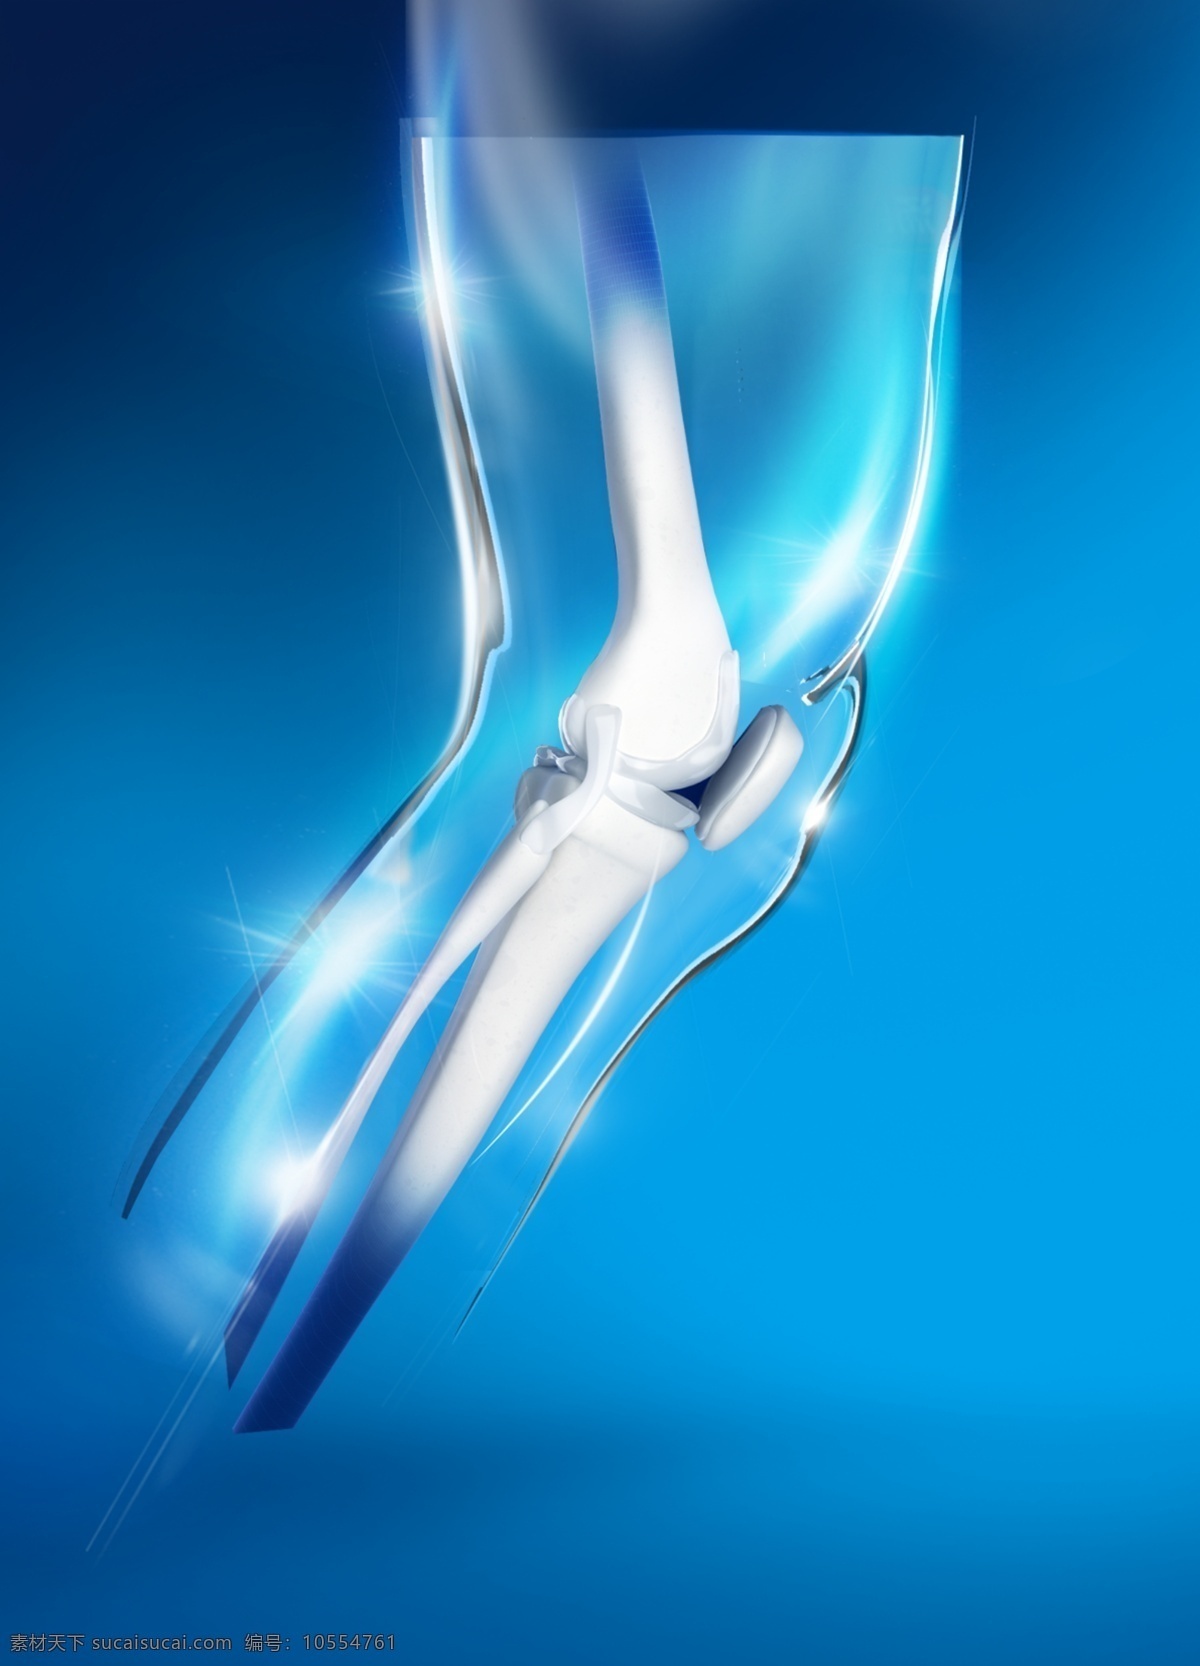 骨骼图片 骨骼 脚骨 膝盖骨 科技感 健康 光感 大腿 生活百科 医疗保健